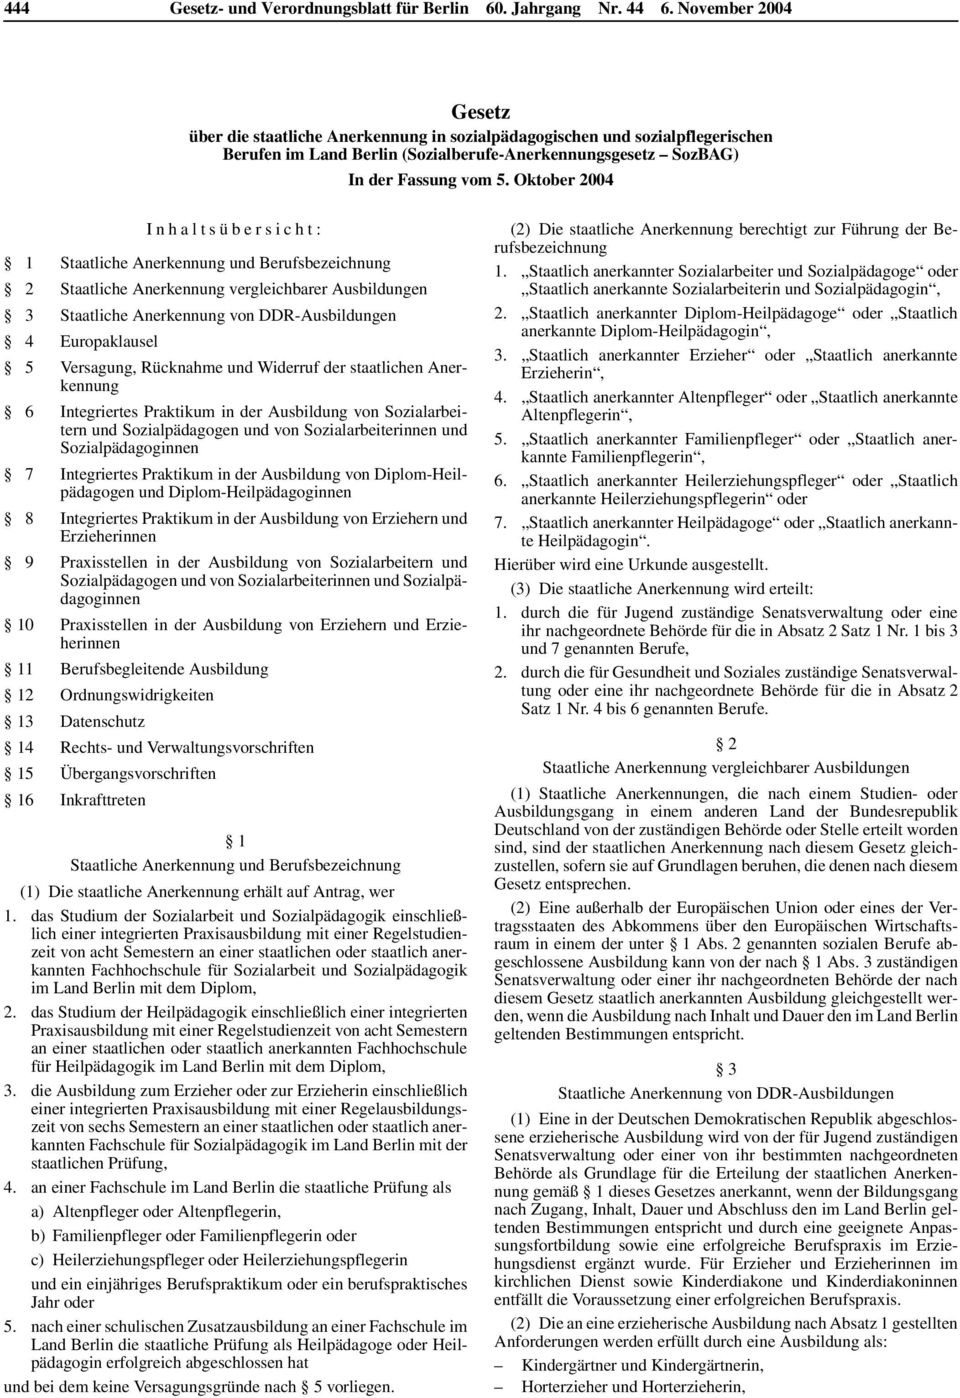 Oktober 2004 Inhaltsübersicht: 1 Staatliche Anerkennung und Berufsbezeichnung 2 Staatliche Anerkennung vergleichbarer Ausbildungen 3 Staatliche Anerkennung von DDR-Ausbildungen 4 Europaklausel 5